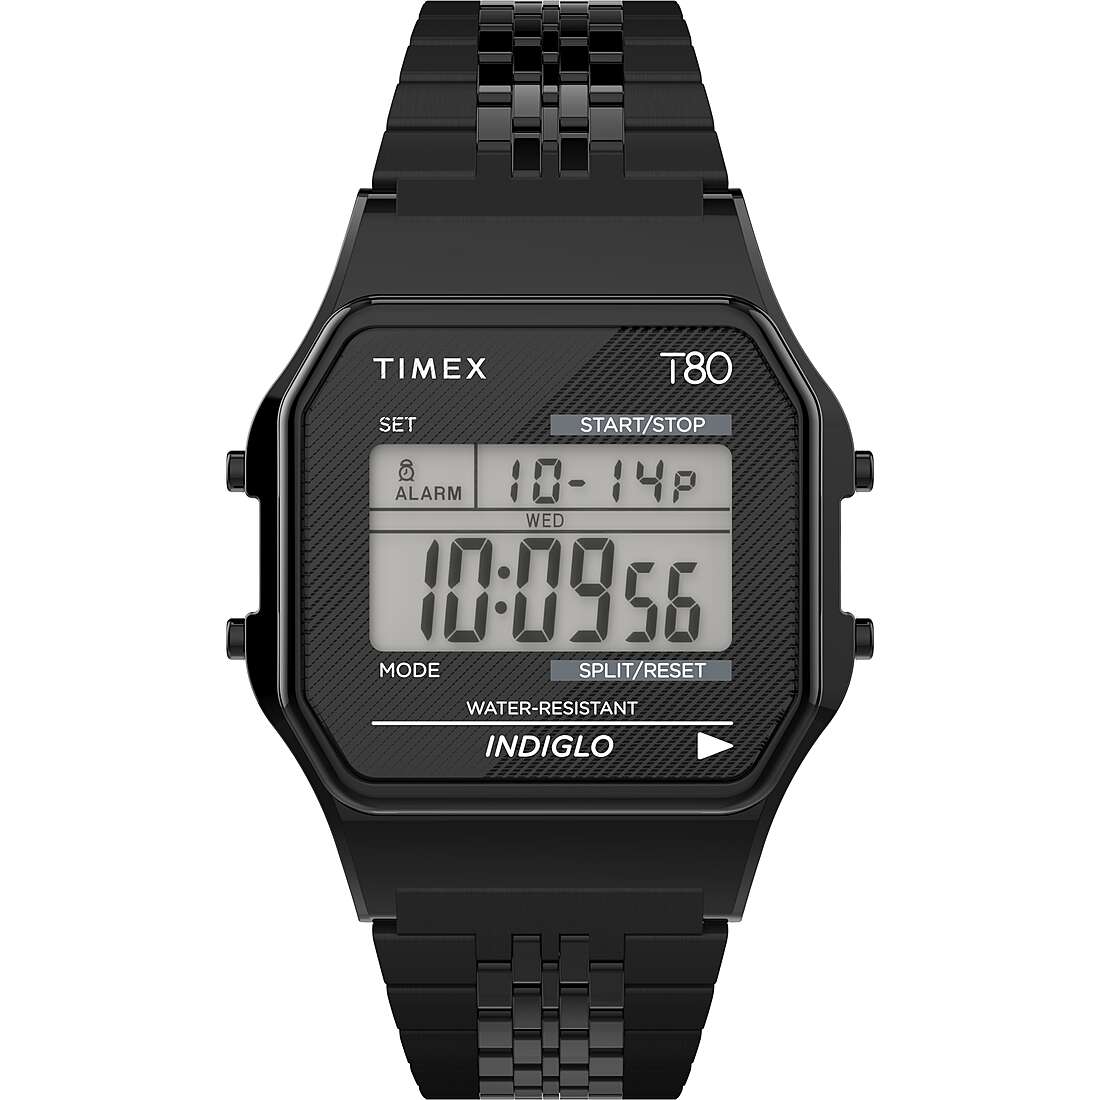 Uhr digital unisex Timex Timex80 TW2R79400